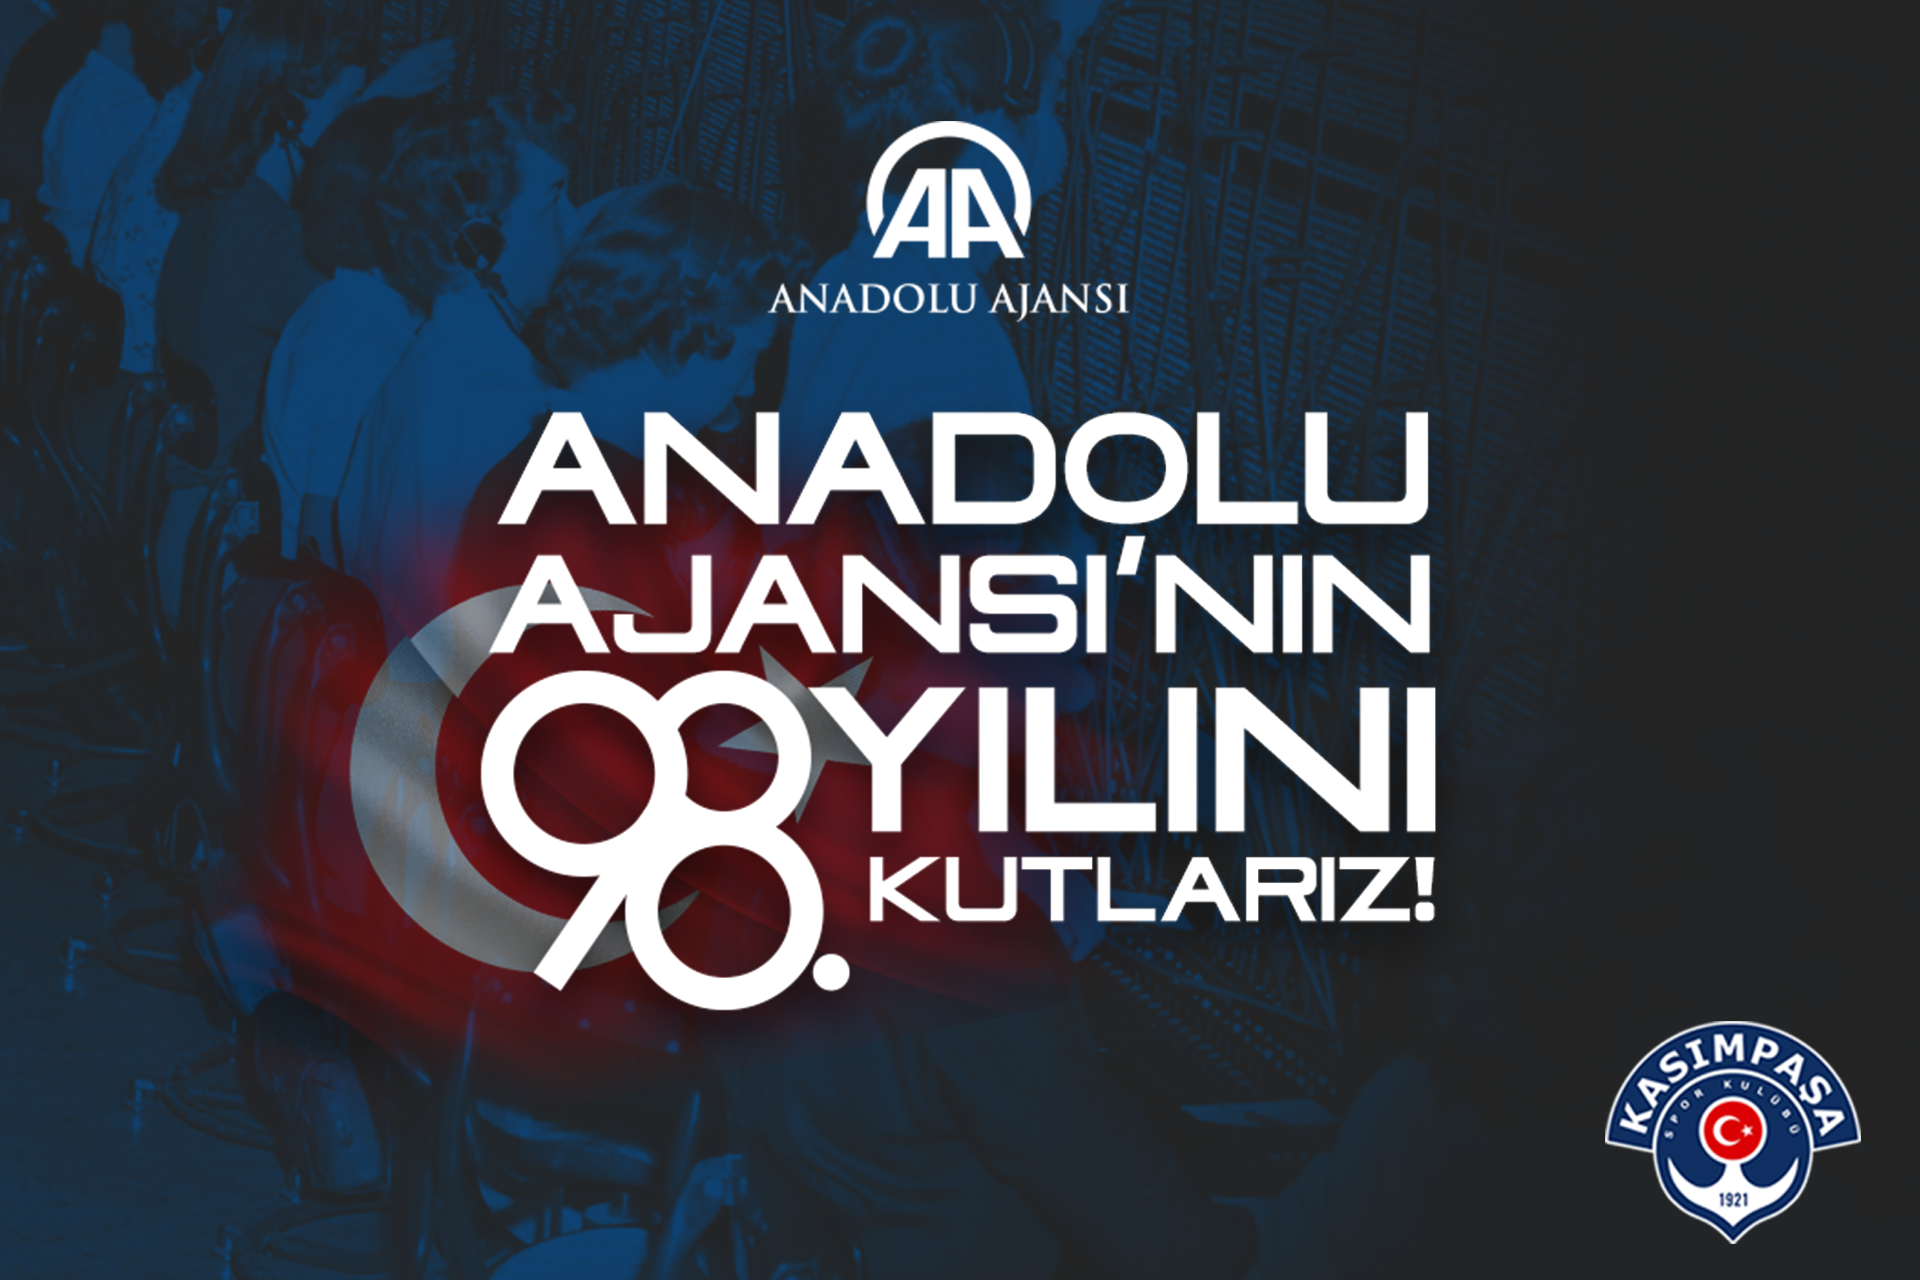 Anadolu Ajansı’nın 98. yılını kutluyoruz